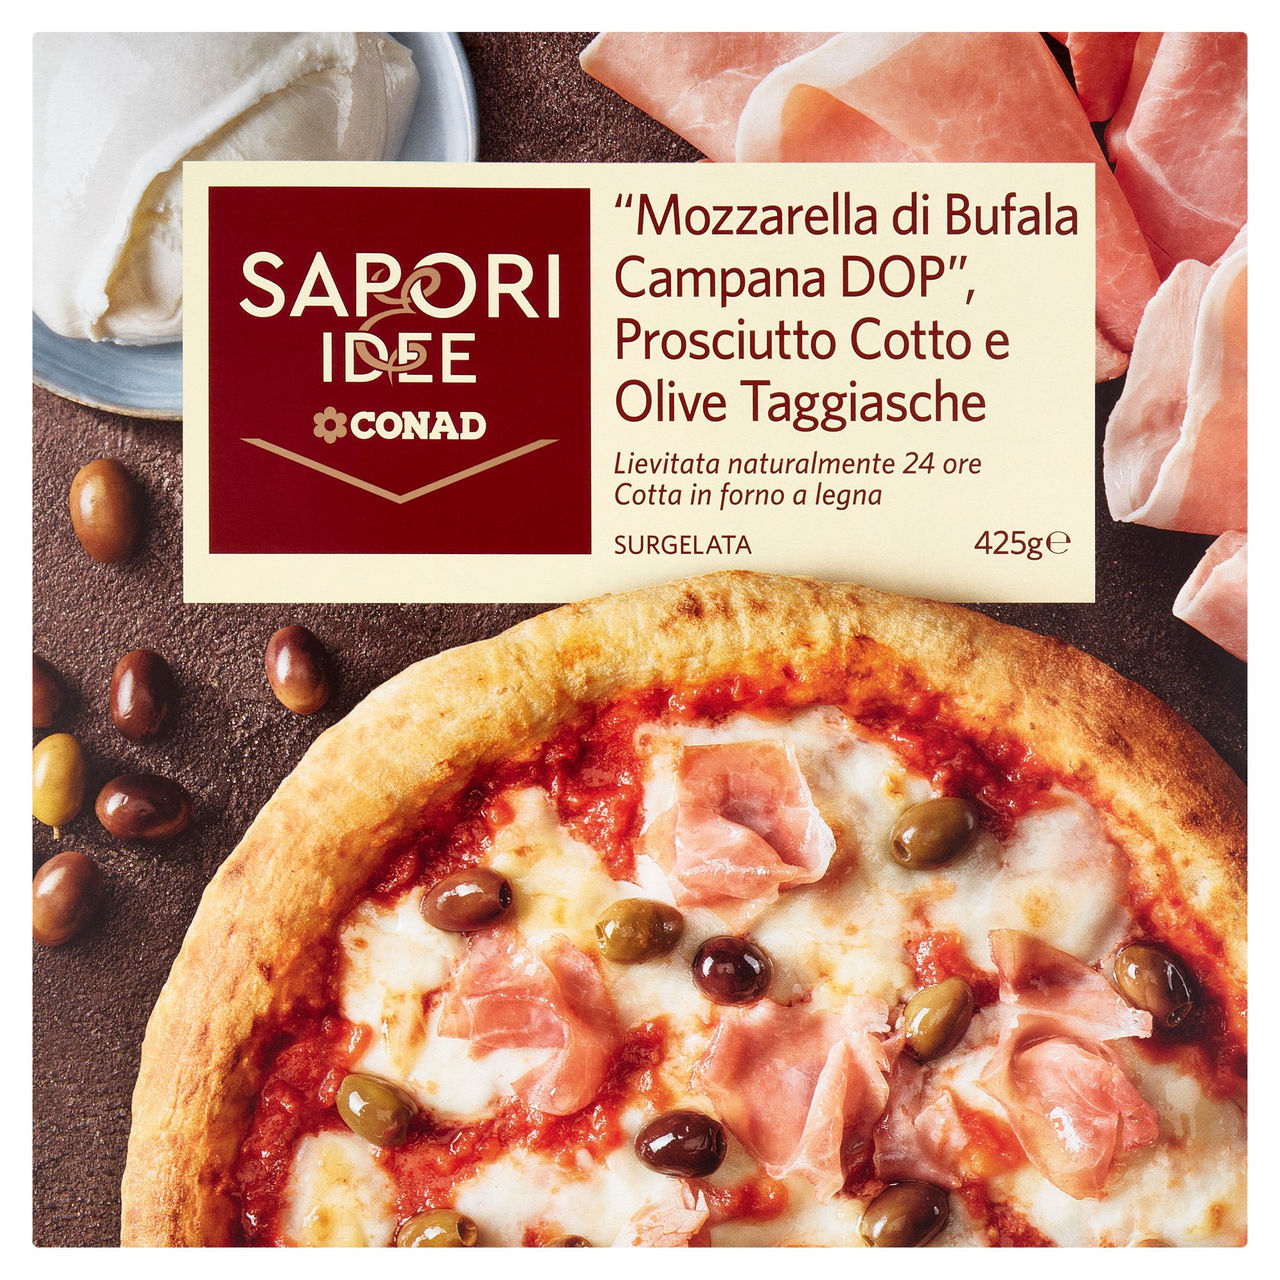 SAPORI & IDEE CONAD Mozzarella Bufala Campana DOP, Prosciutto Cotto, Olive Taggiasche Surgelata 425g